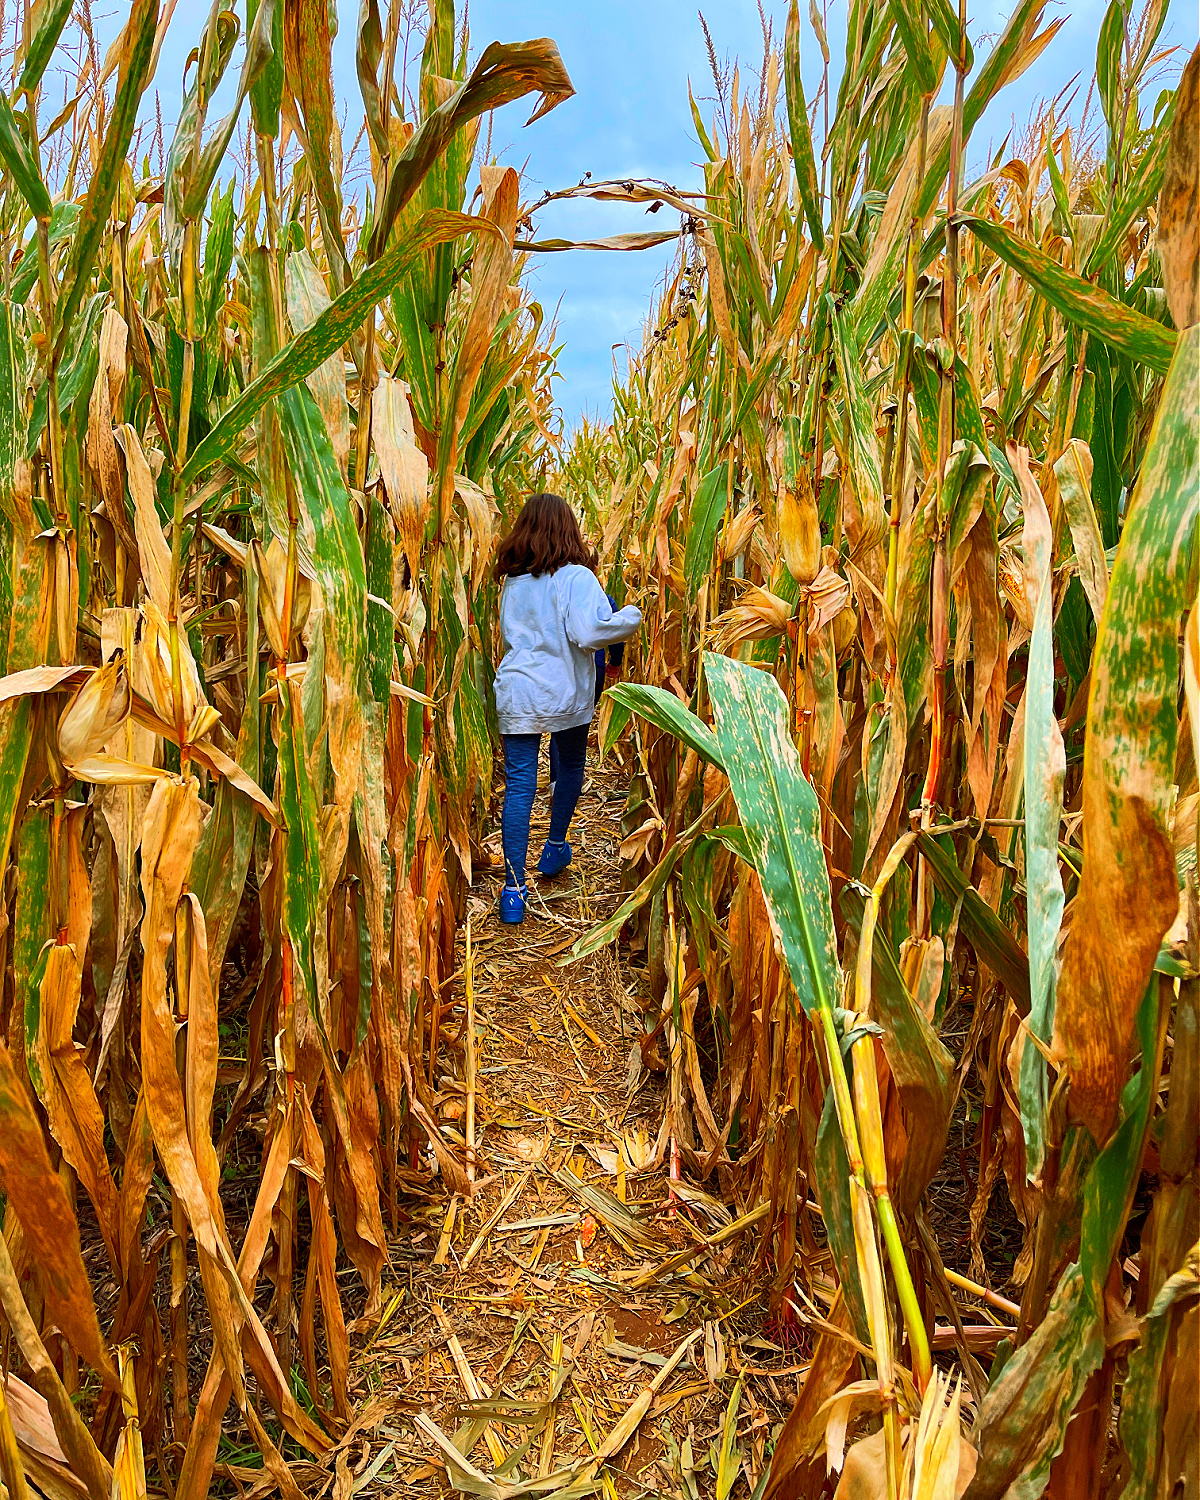 gaver farm corn maze